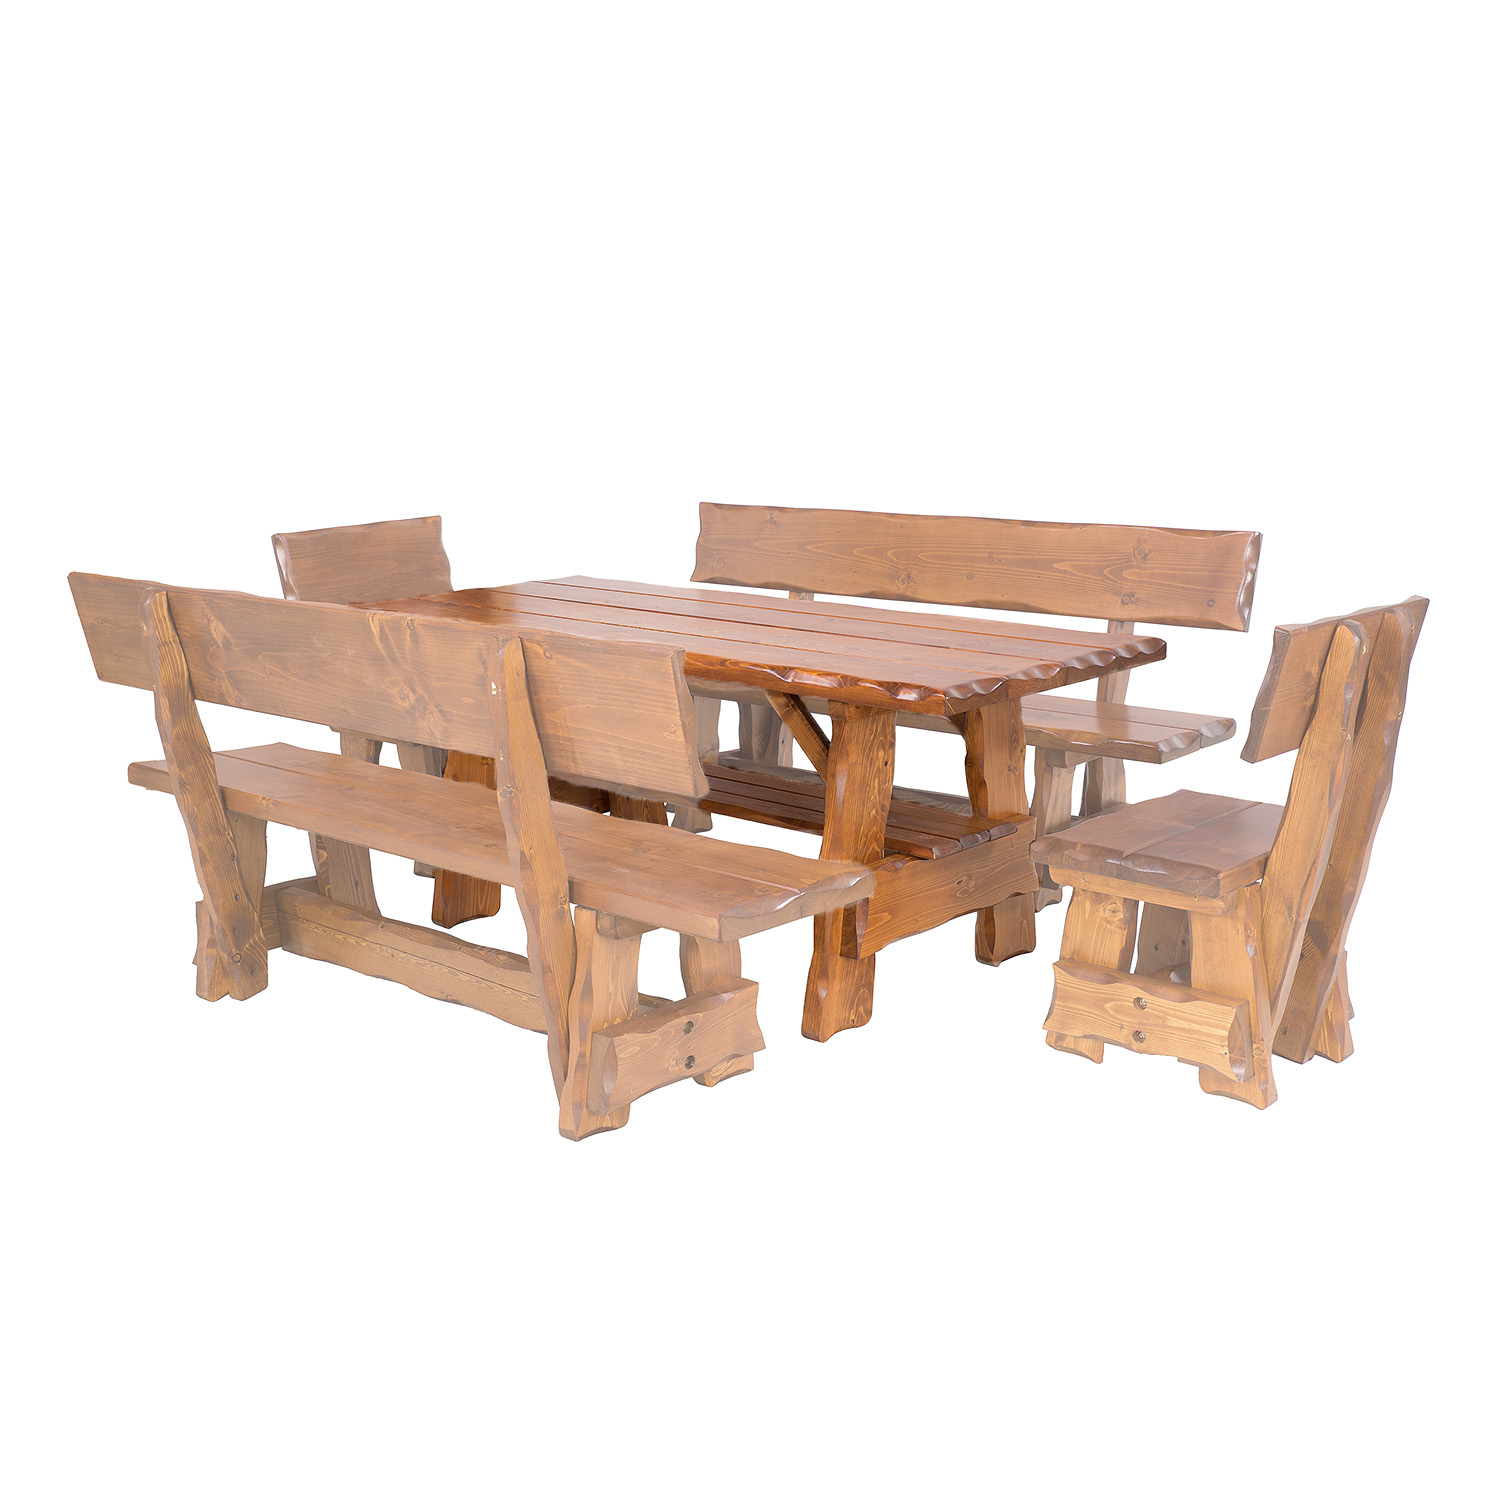 BEN - zahradní stůl ze smrkového dřeva, lakovaný 200x80x83cm